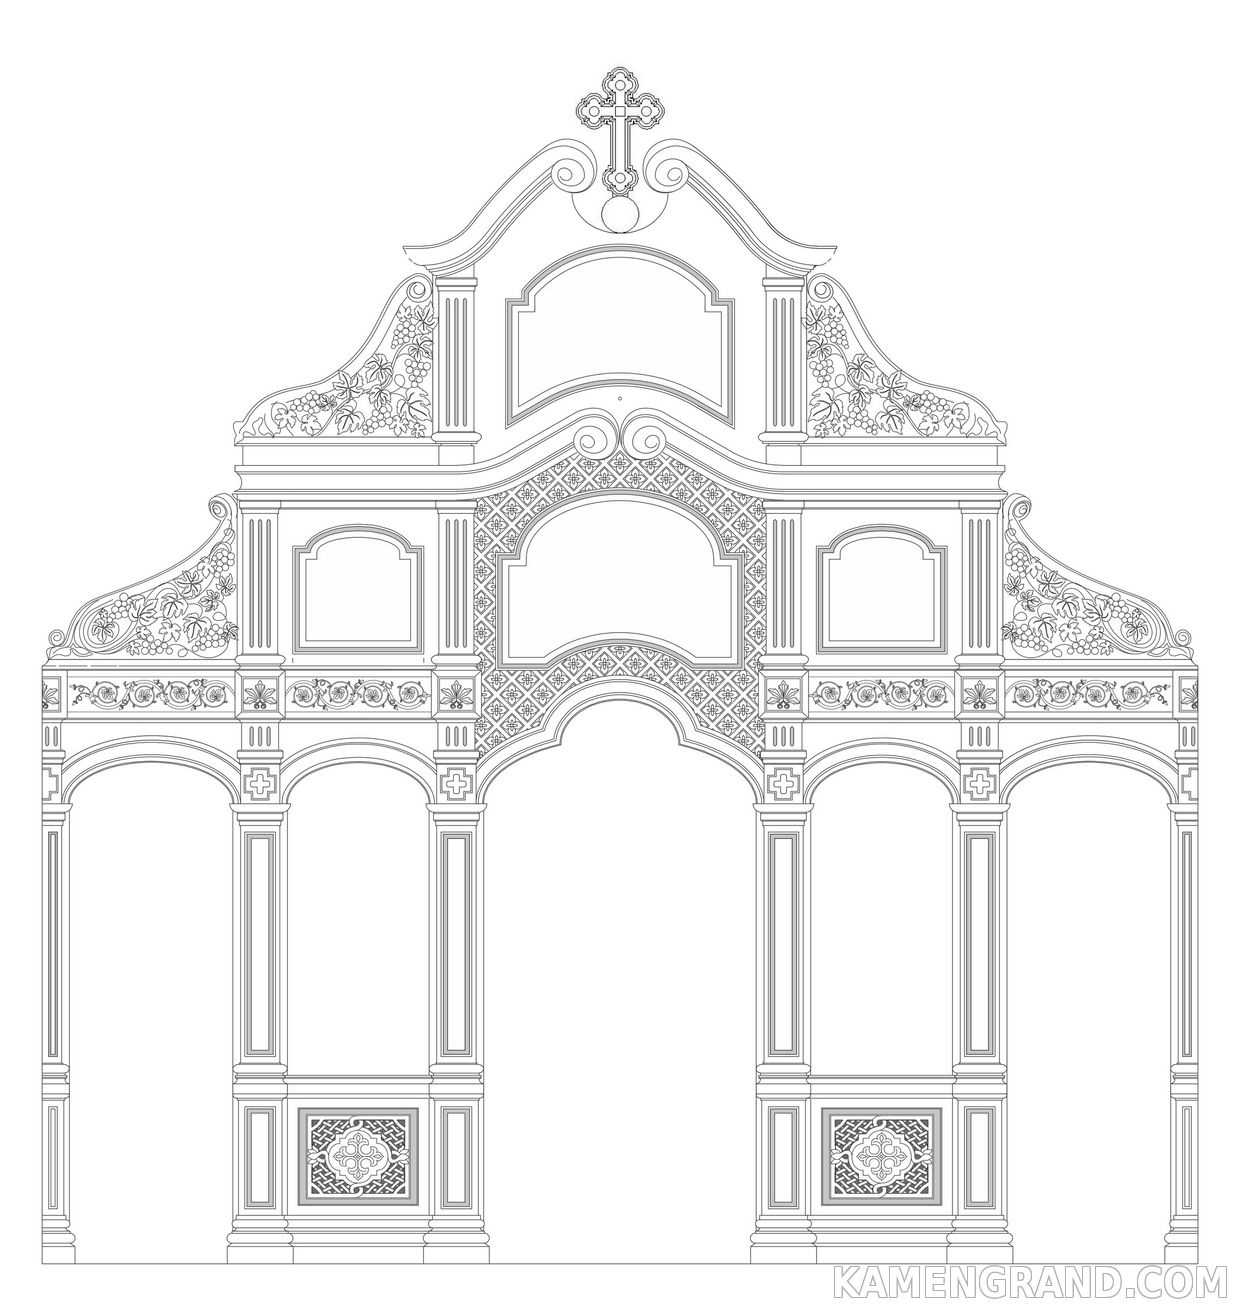 Иконостас в церковь в необарочном стиле проект